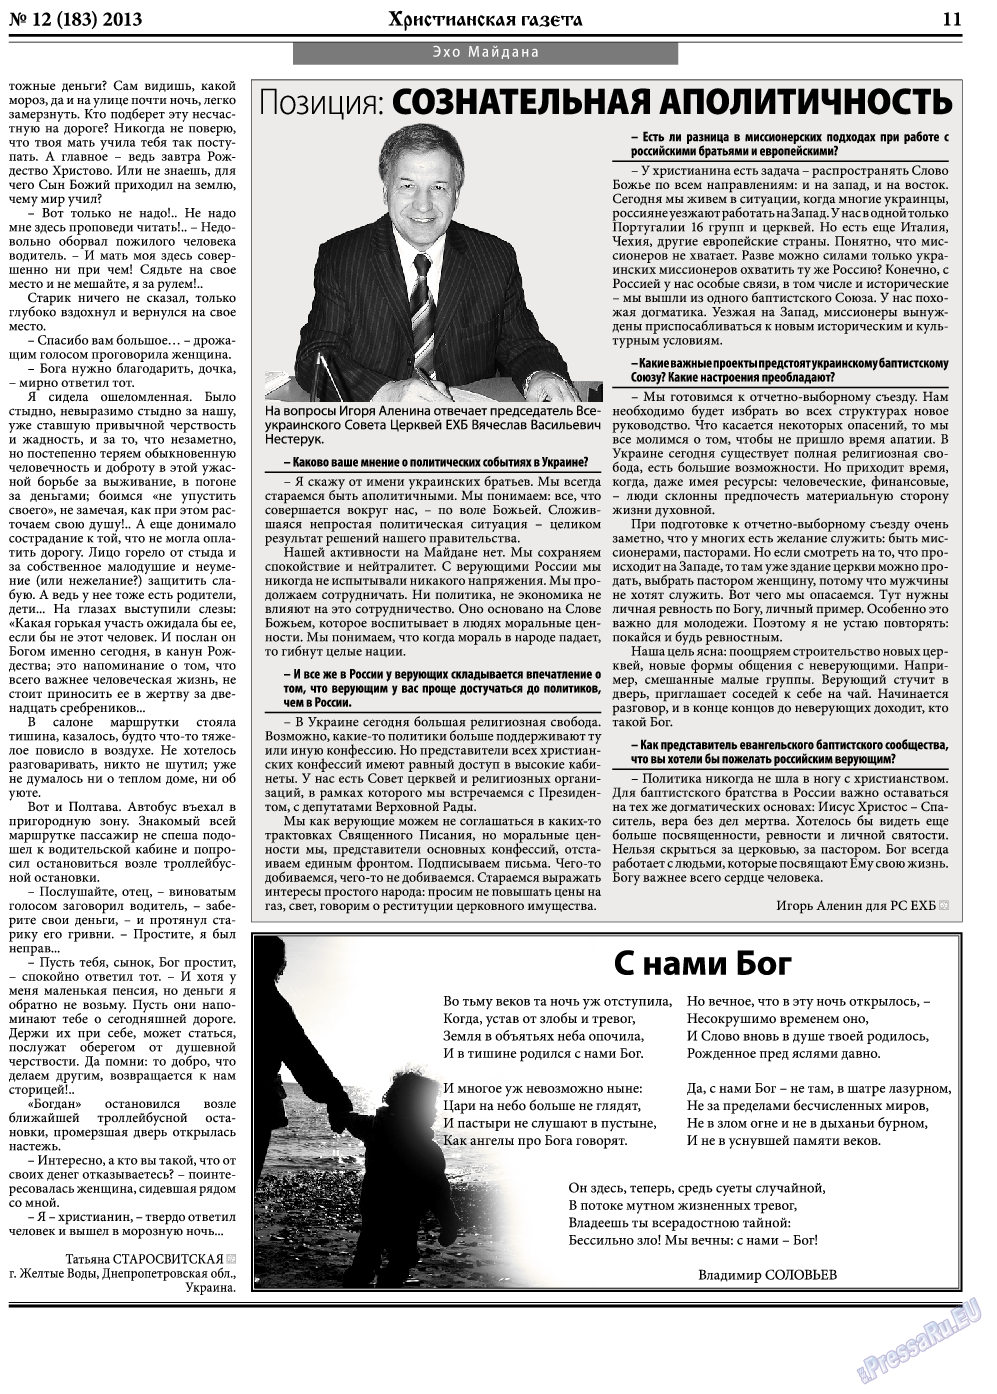 Христианская газета, газета. 2013 №12 стр.11